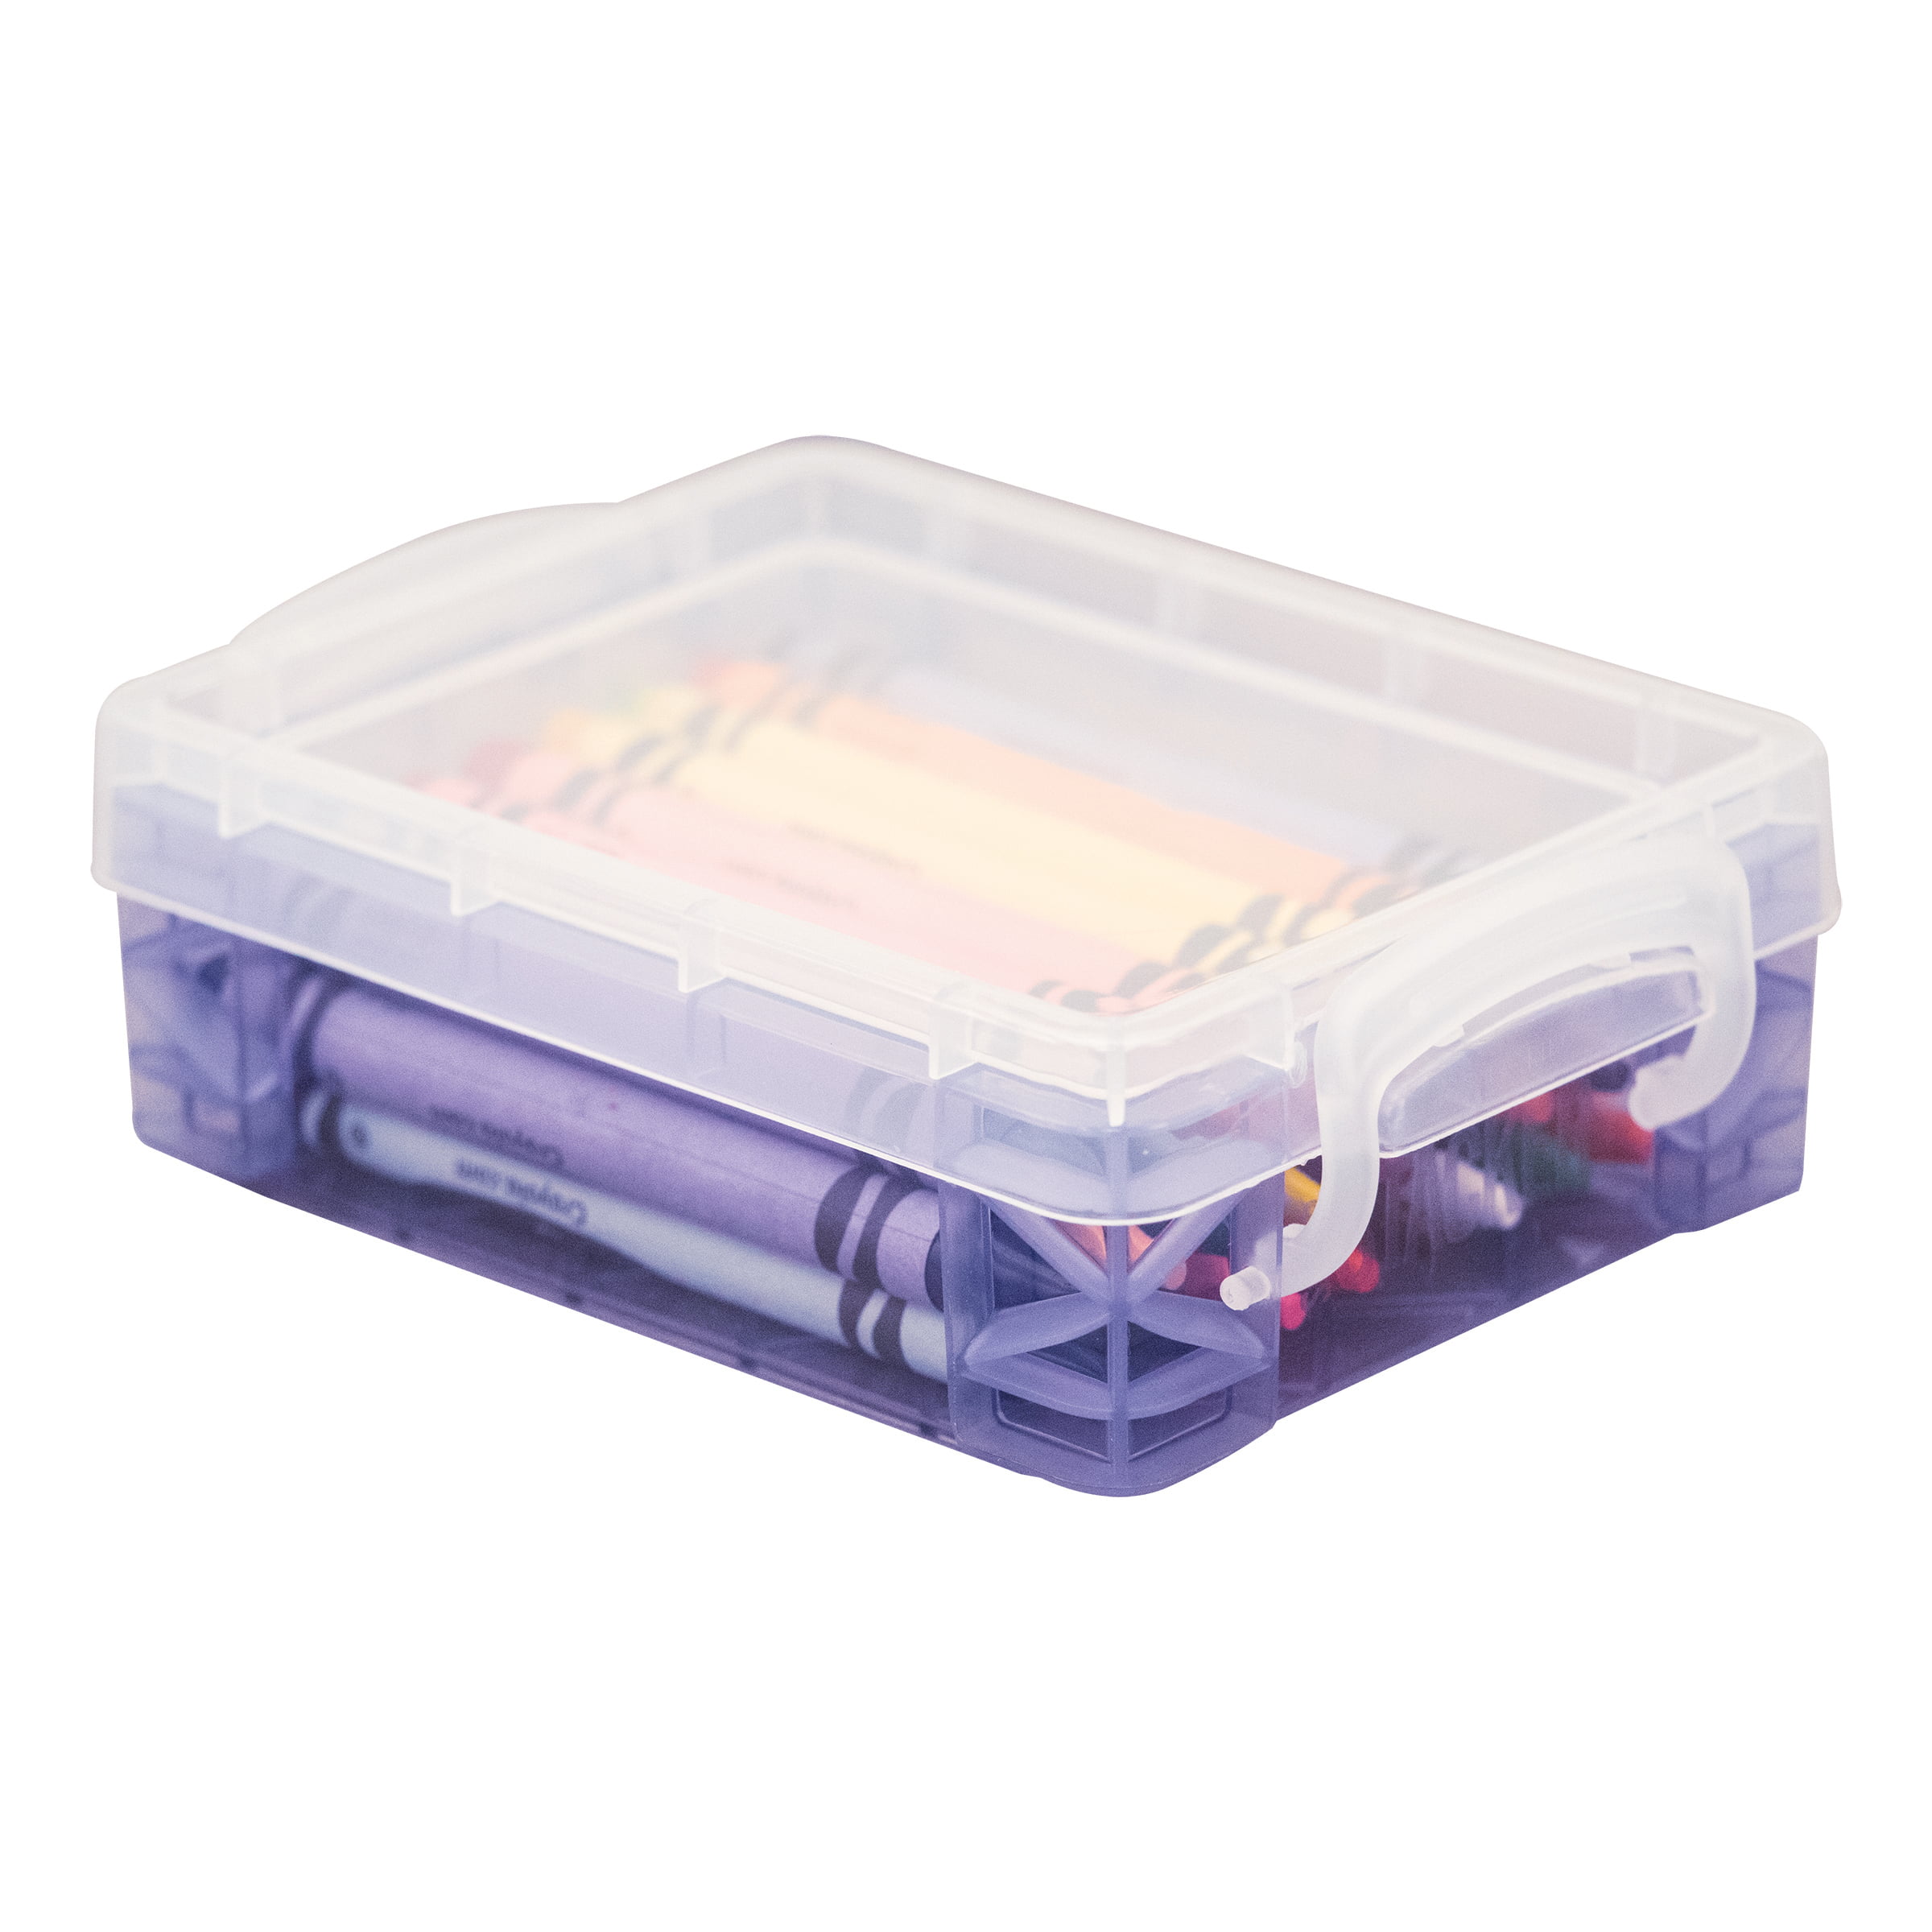 Advantus Super Stacker Crayon Storage Box 4 45 x 3 15 x 1 35 Clear